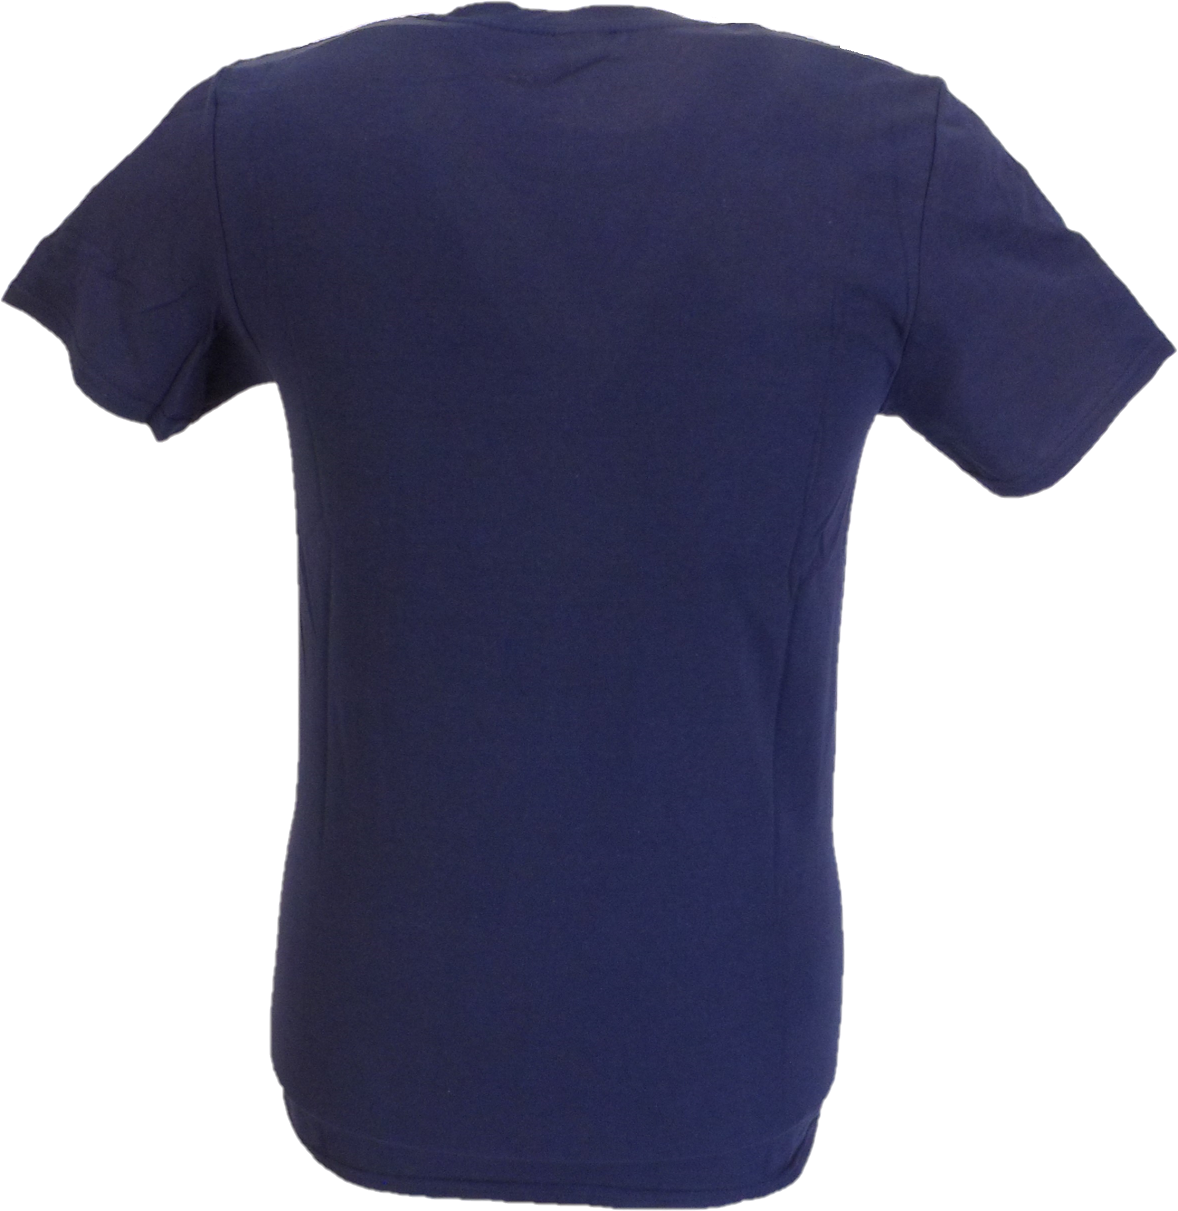 Offizielles lizenziertes Oasis T-Shirt in Marineblau mit länglichem Target-Logo für Herren